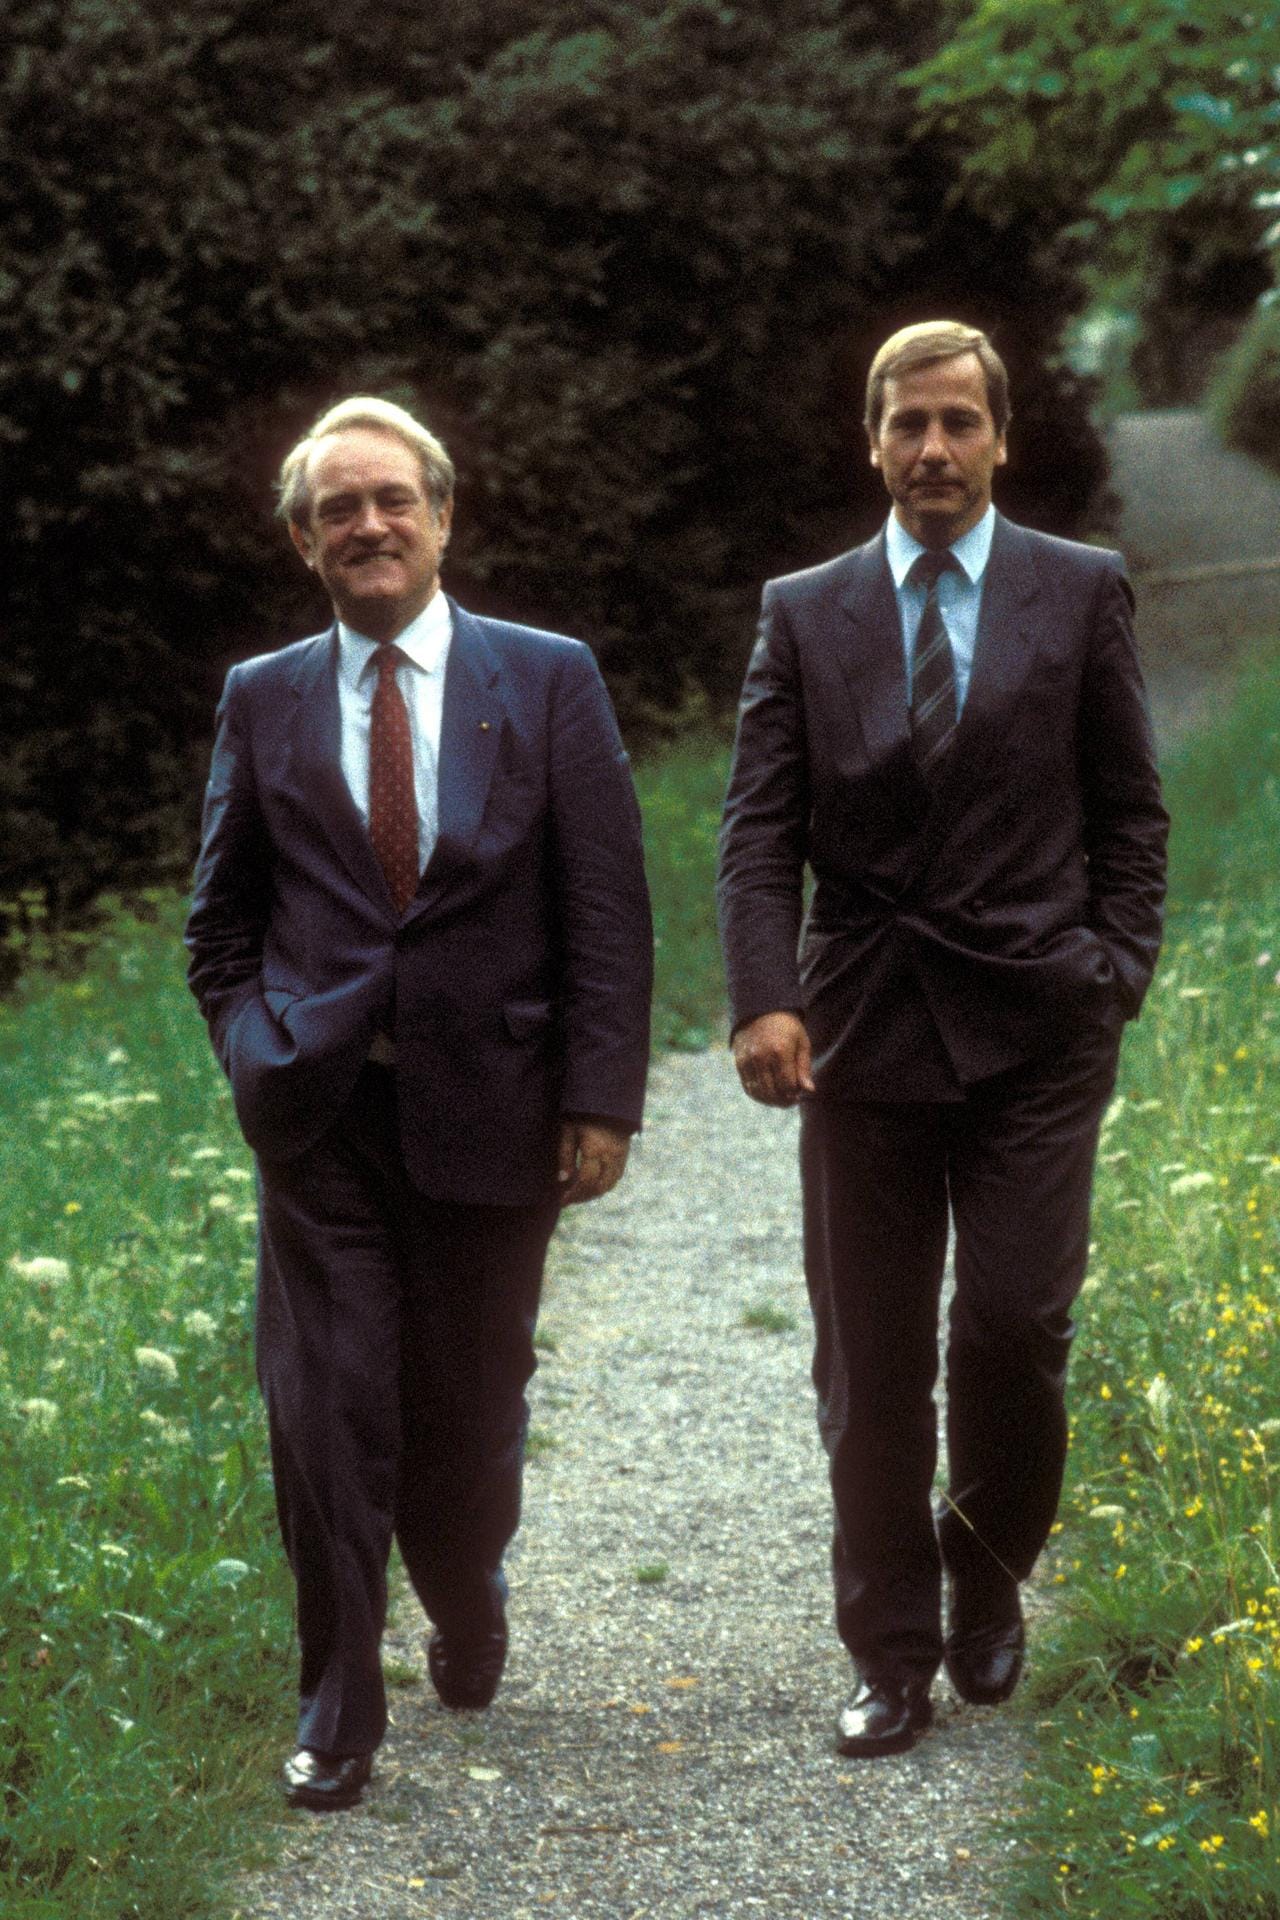 Clement studierte Rechtswissenschaften, arbeitete ab 1968 aber als Journalist. Nach langer Zeit bei der Westfälischen Rundschau wurde er von 1981 bis 1986 Sprecher des SPD-Bundesvorstandes und von 1985 bis 1986 zugleich stellvertretender Bundesgeschäftsführer der SPD. Hier spaziert er mit dem ehemaligen NRW-Ministerpräsidenten Johannes Rau im Jahr 1986 durch einen Park.